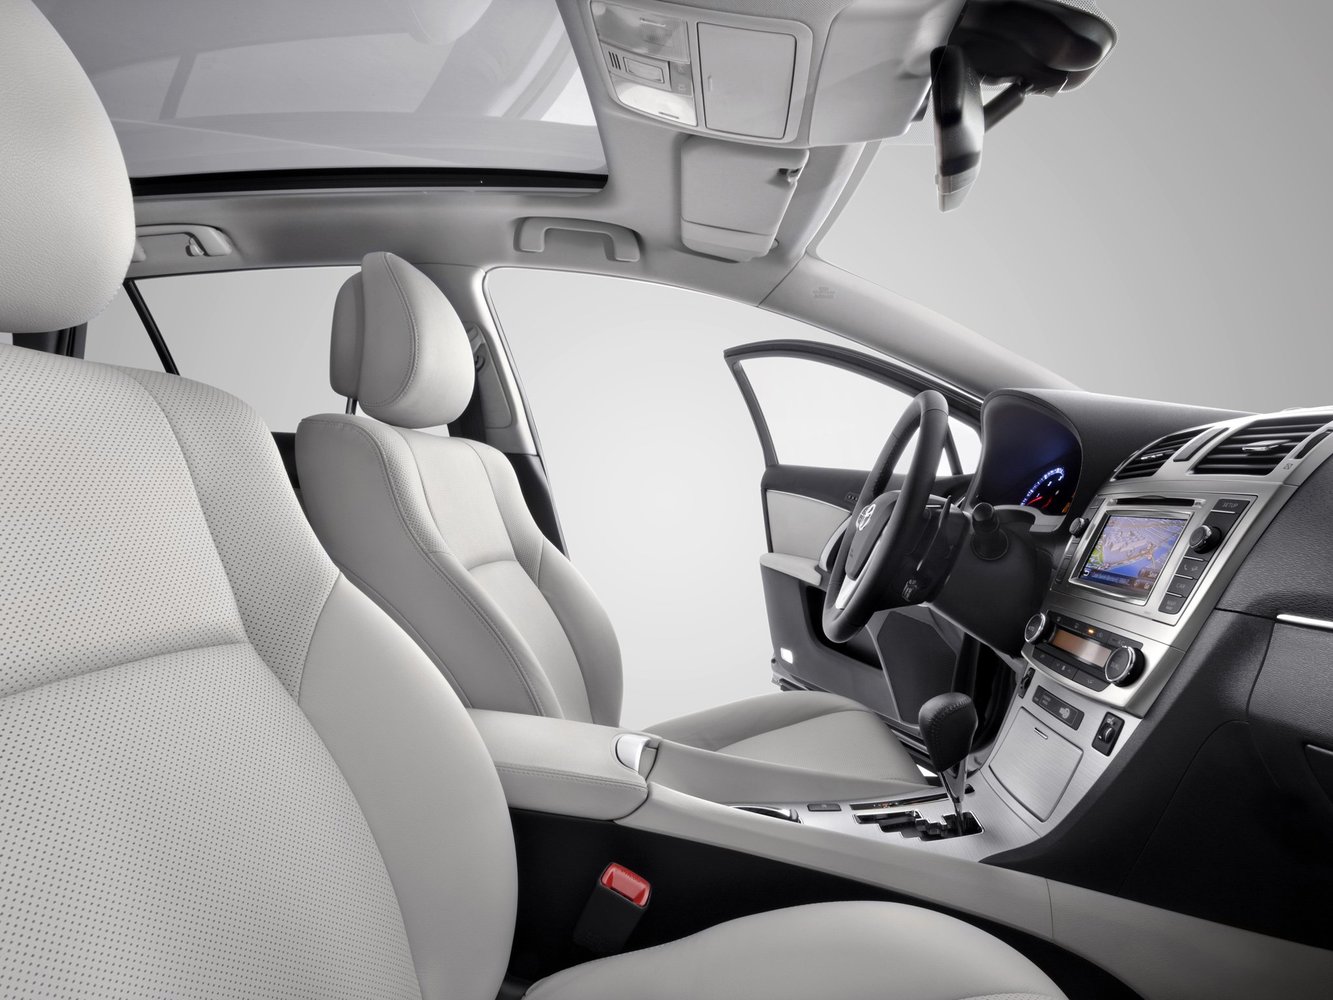 универсал Toyota Avensis 2011 - 2015г выпуска модификация 1.6 MT (132 л.с.)